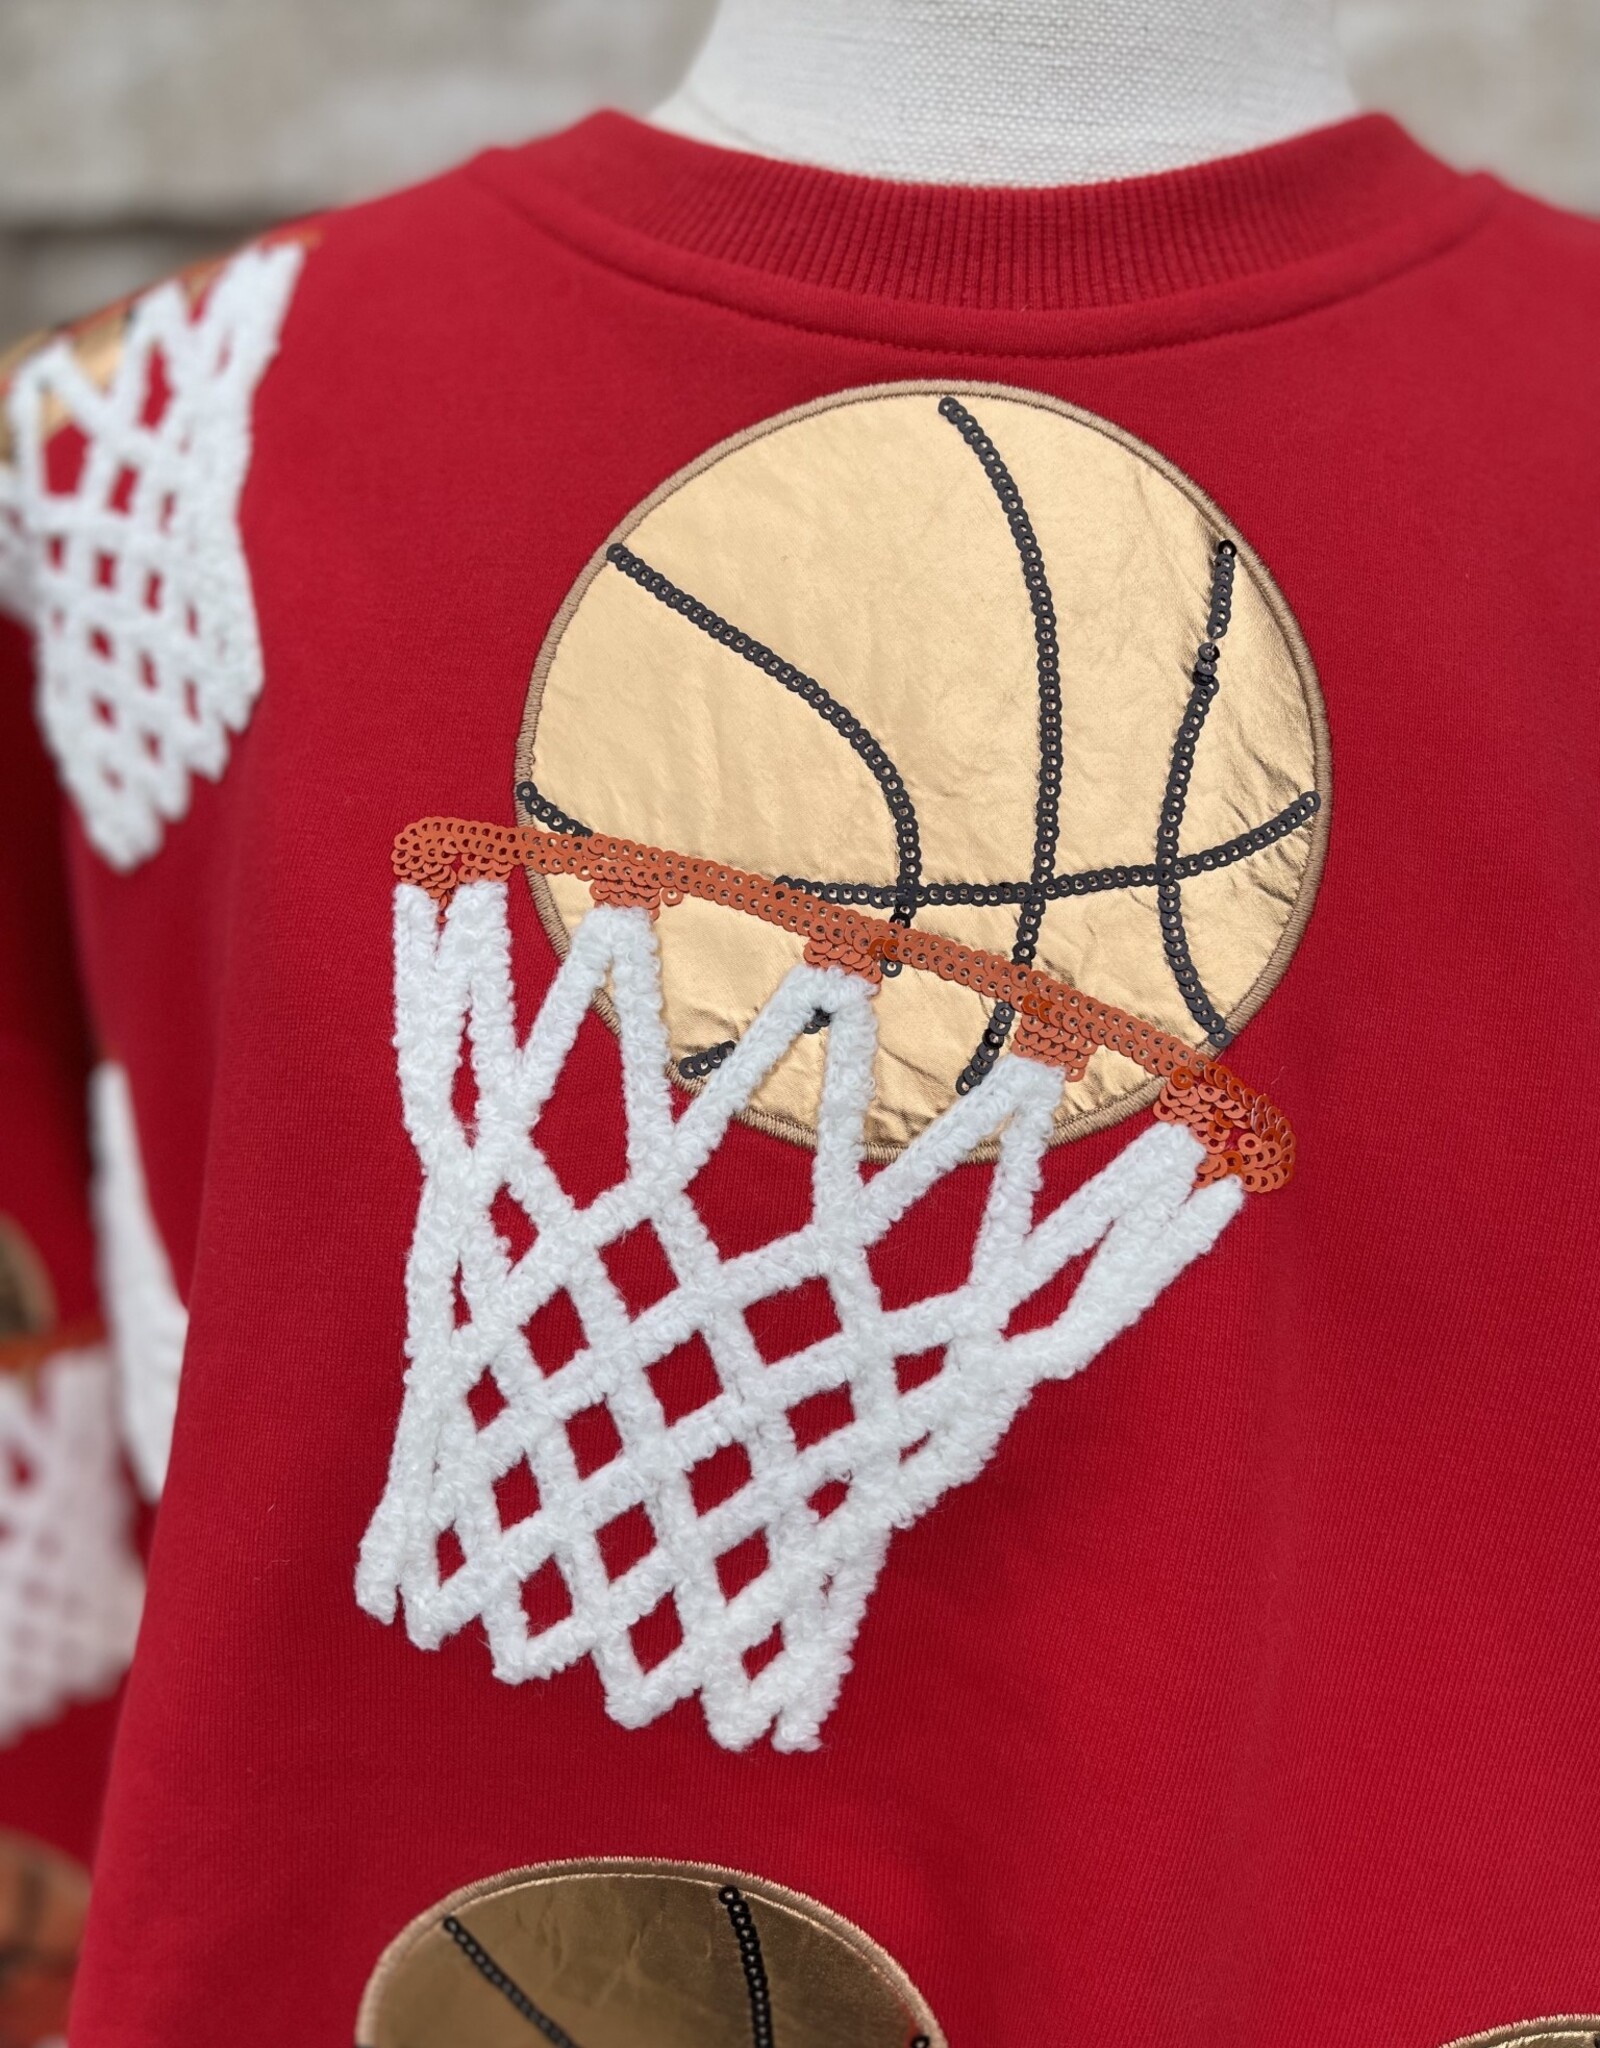 Queen of Sparkles Queen of Sparkles Red Basketball Hoop Sweatshirt